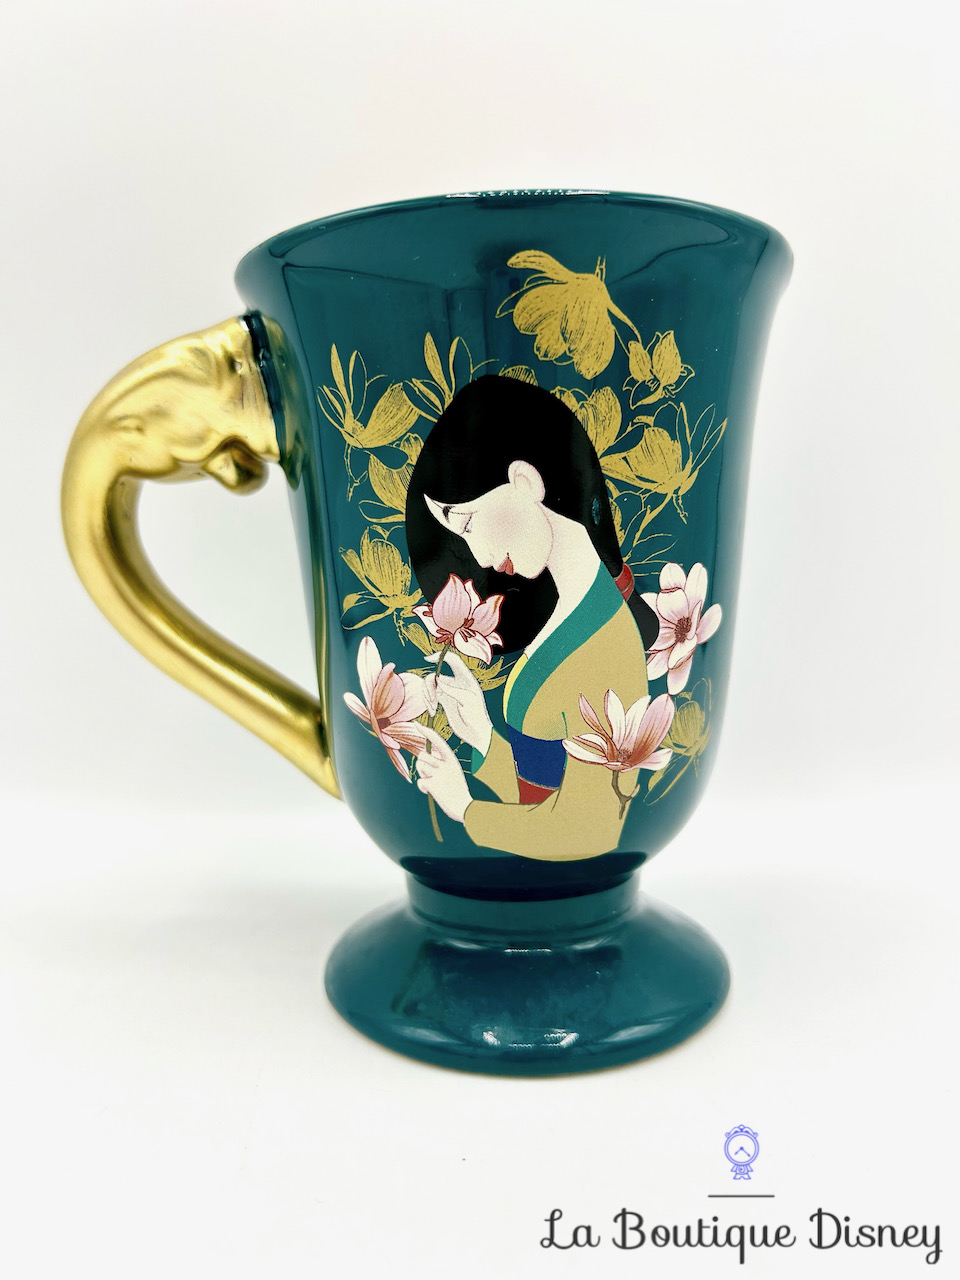 Tasse Mulan Disney mug Primark vert doré fleurs